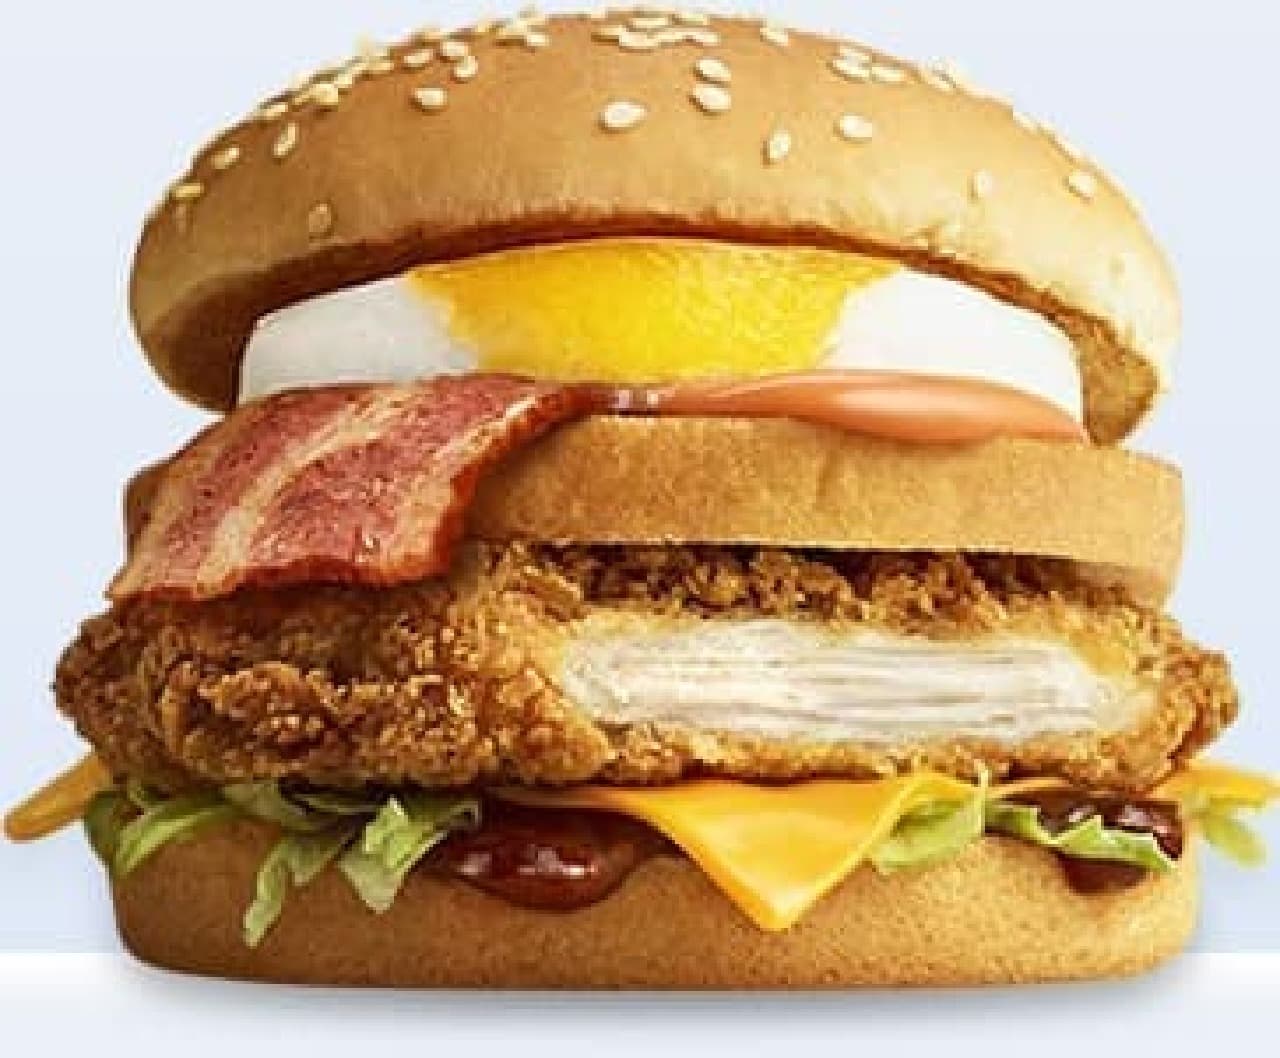 McDonald's "Deluxe BBQ Chicken"